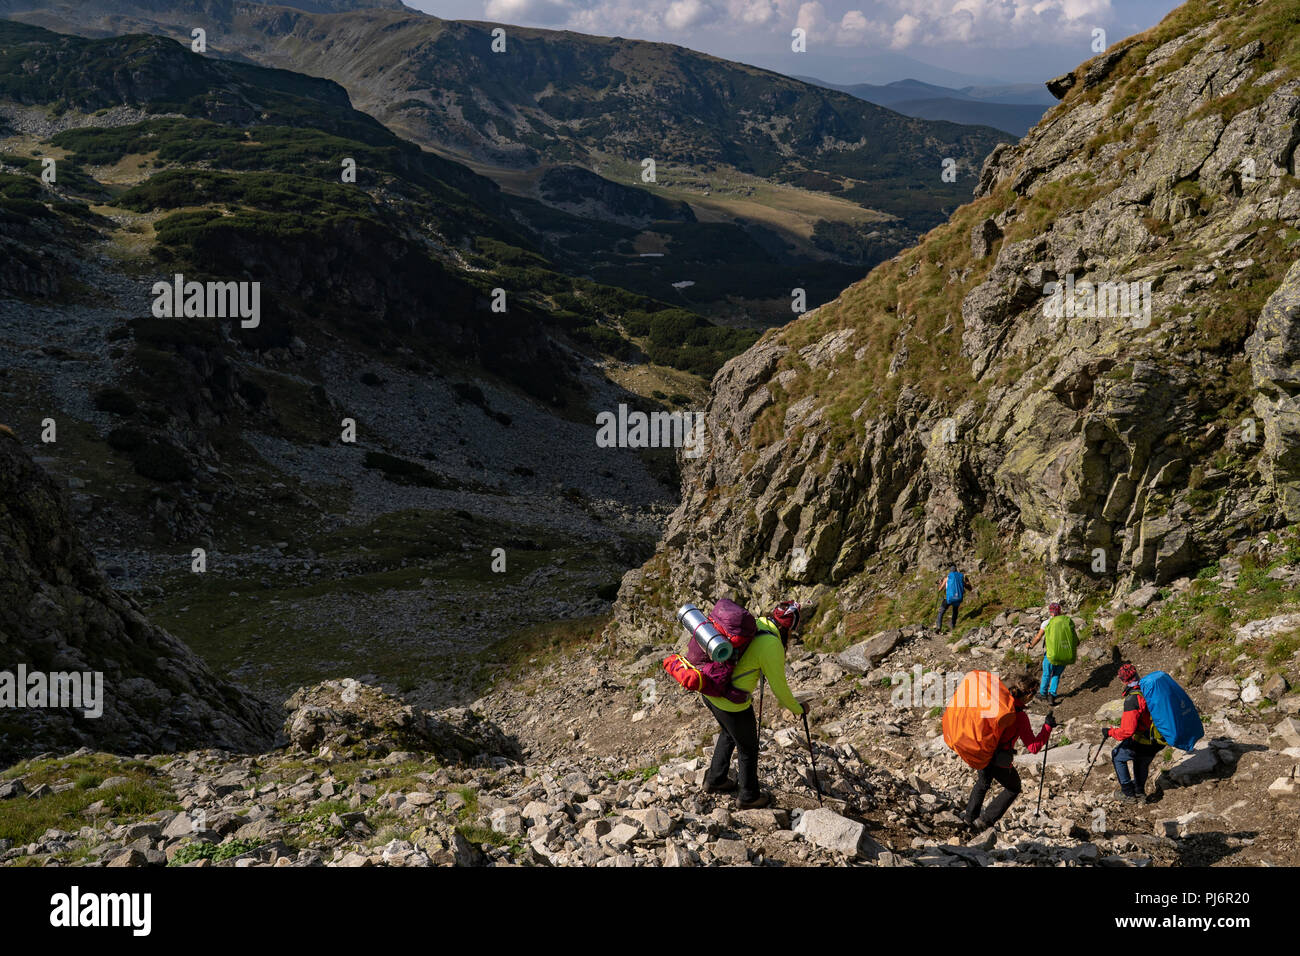 Les amateurs de randonnée atteindre Parangul Mare, 2519m d'altitude, au cours d'une randonnée de 3 jours. Parangul Mare est le 4e plus haut sommet en Roumanie. Banque D'Images